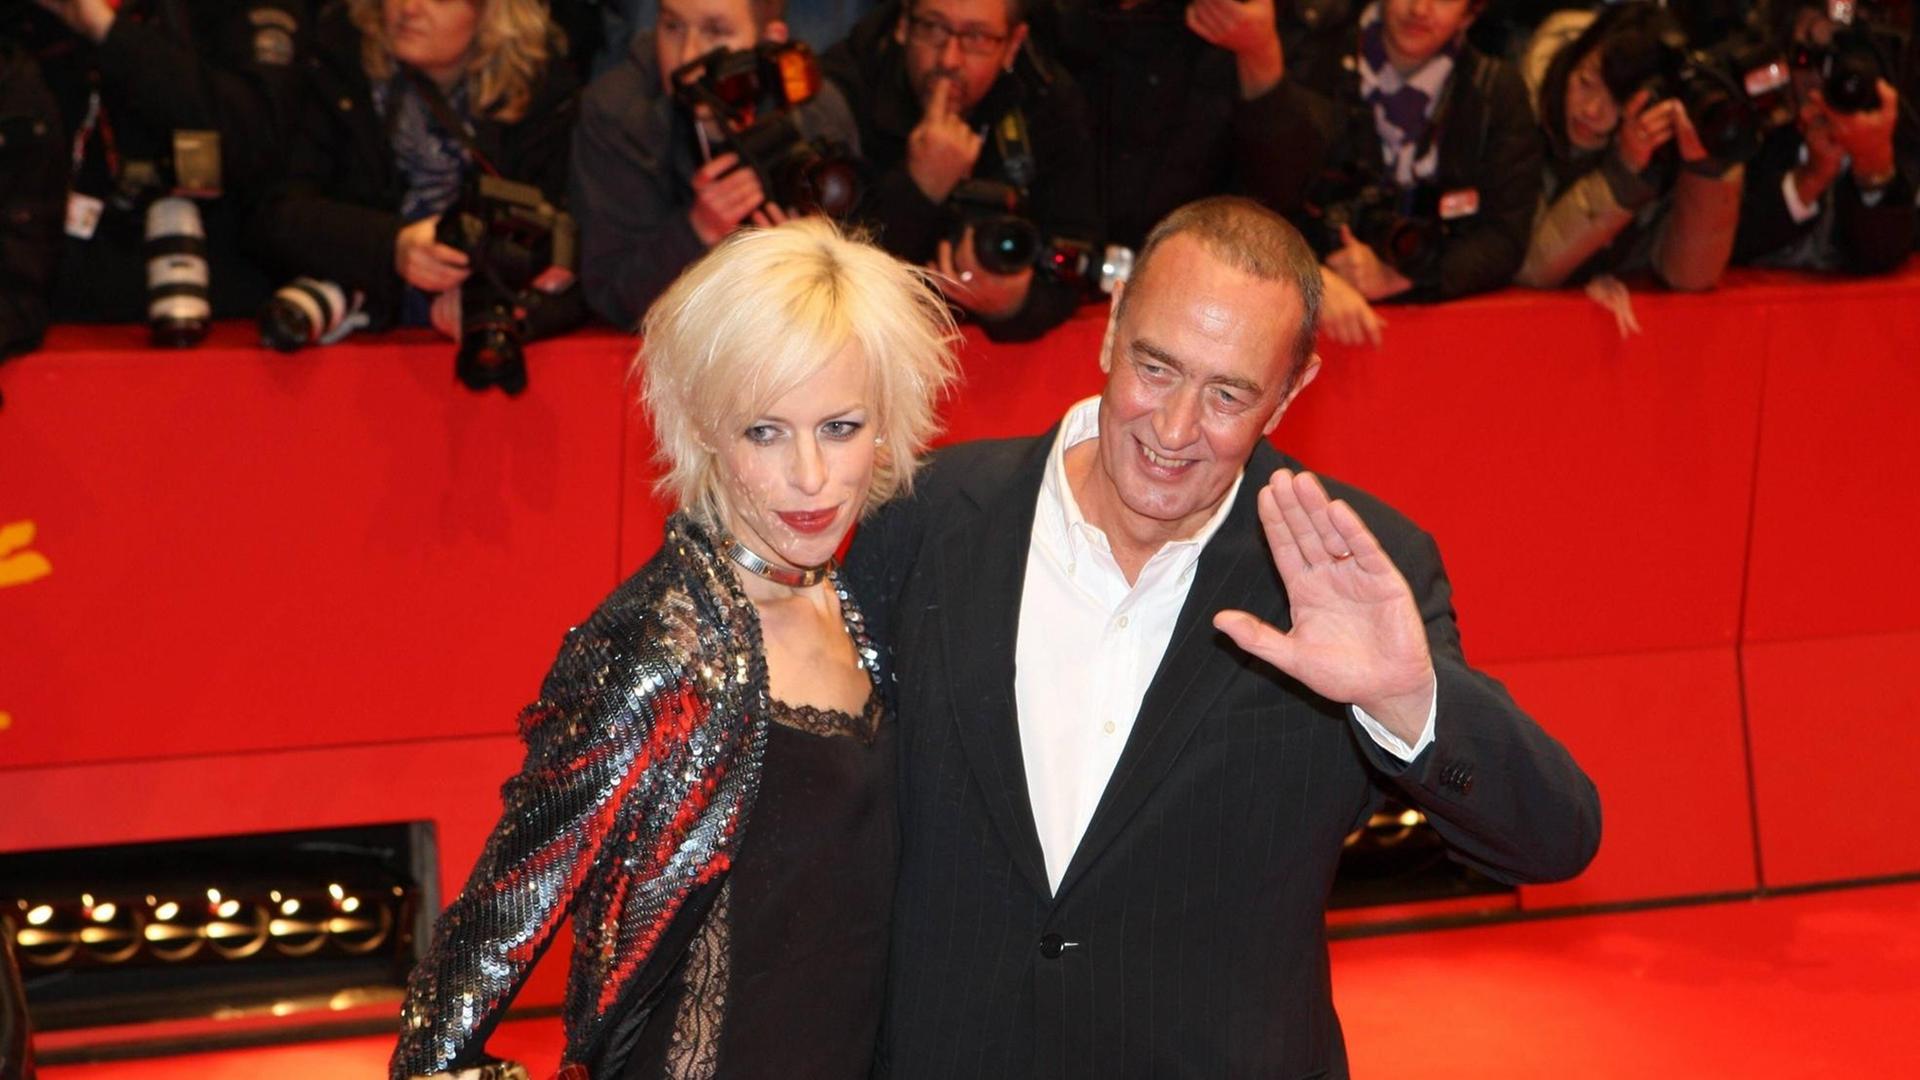 Katja und Bernd Eichinger bei der Premiere von THE INTERNATIONAL auf der Berlinale 2009.